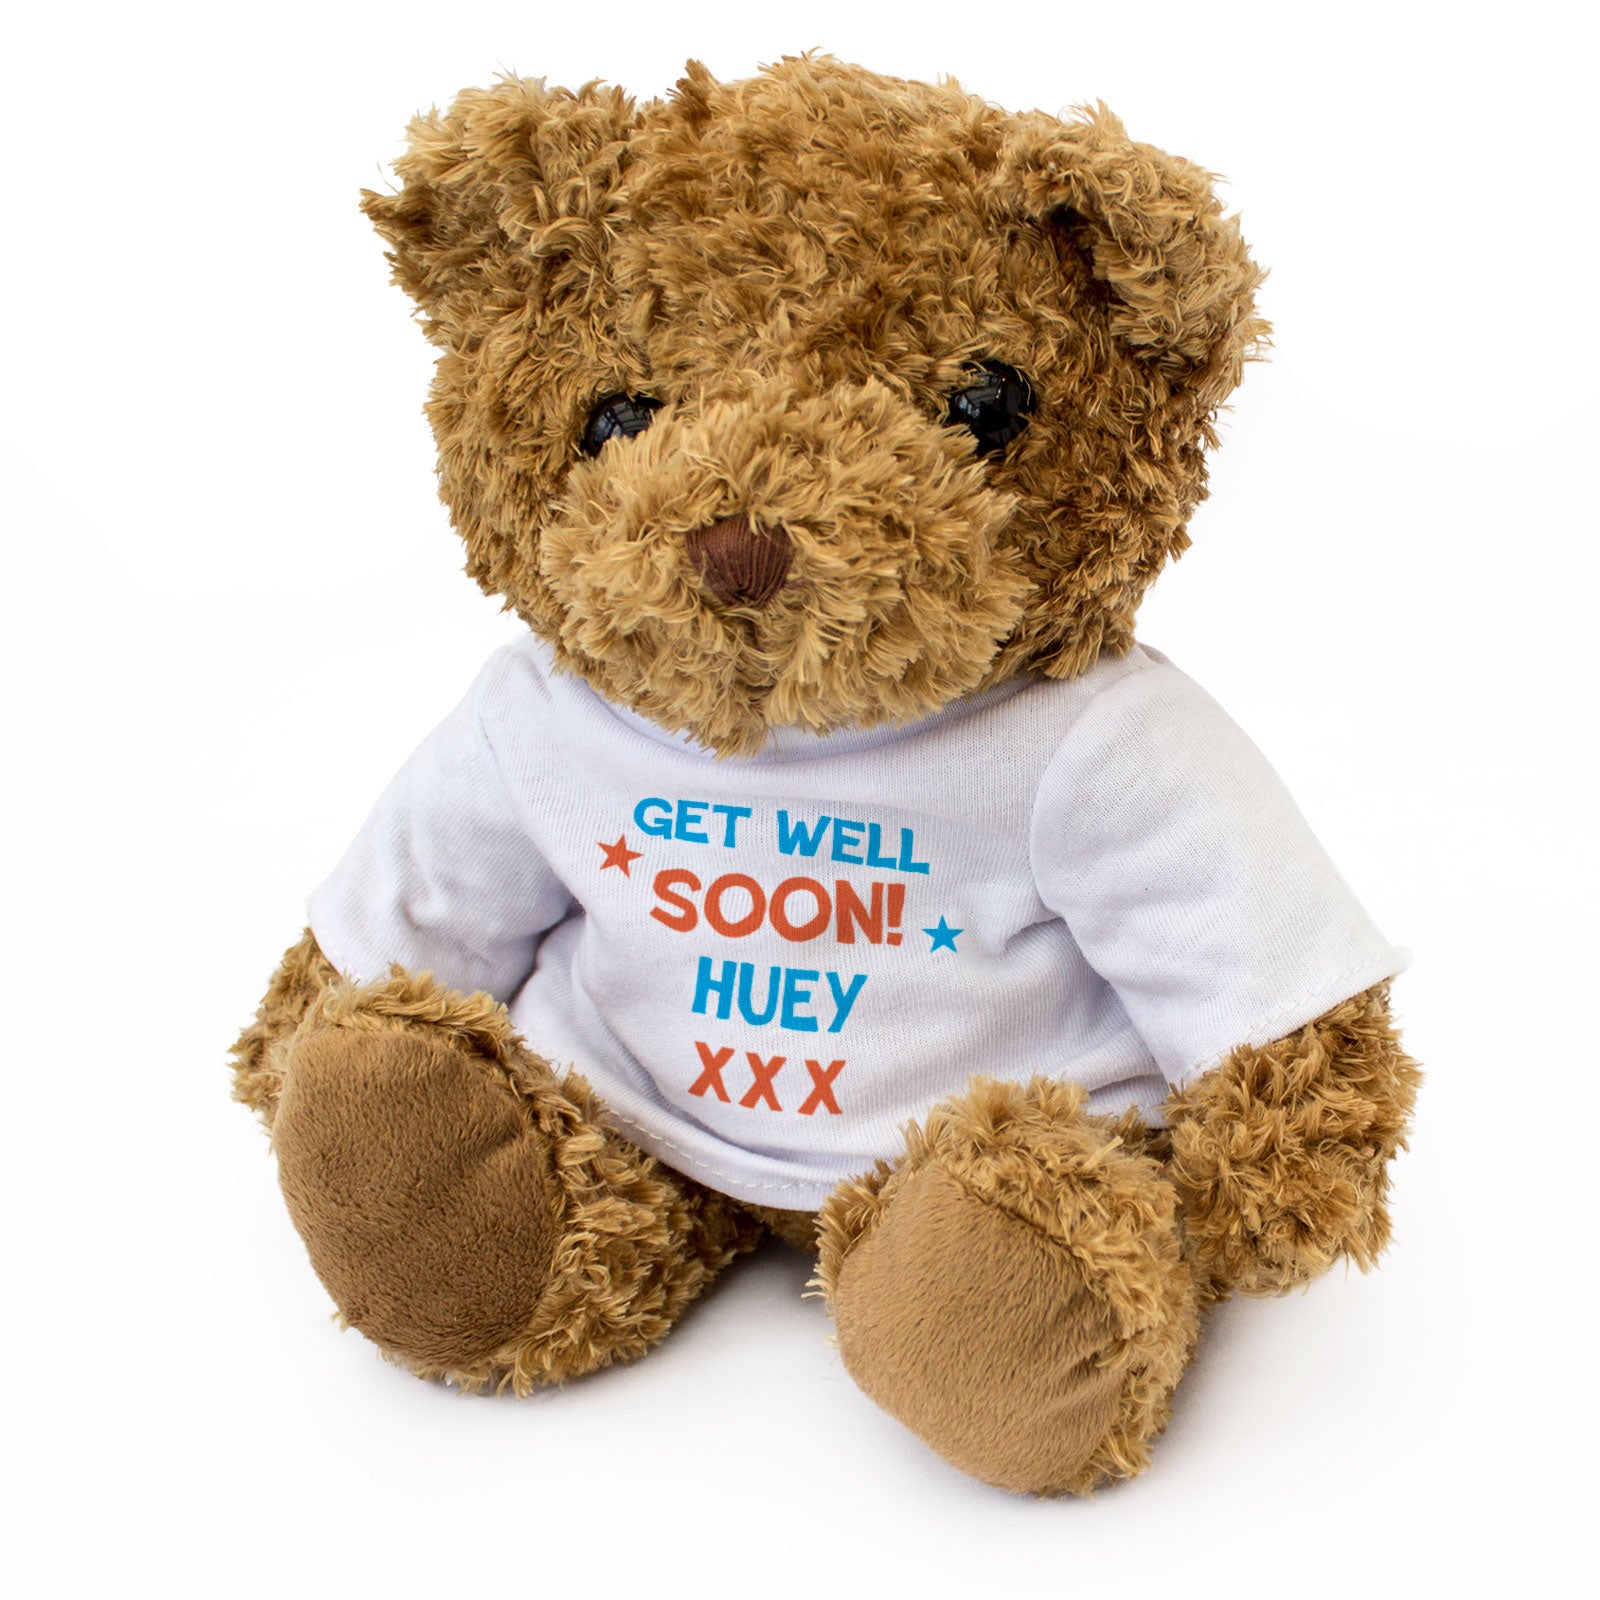 Get Well Soon Huey - Teddy Bear